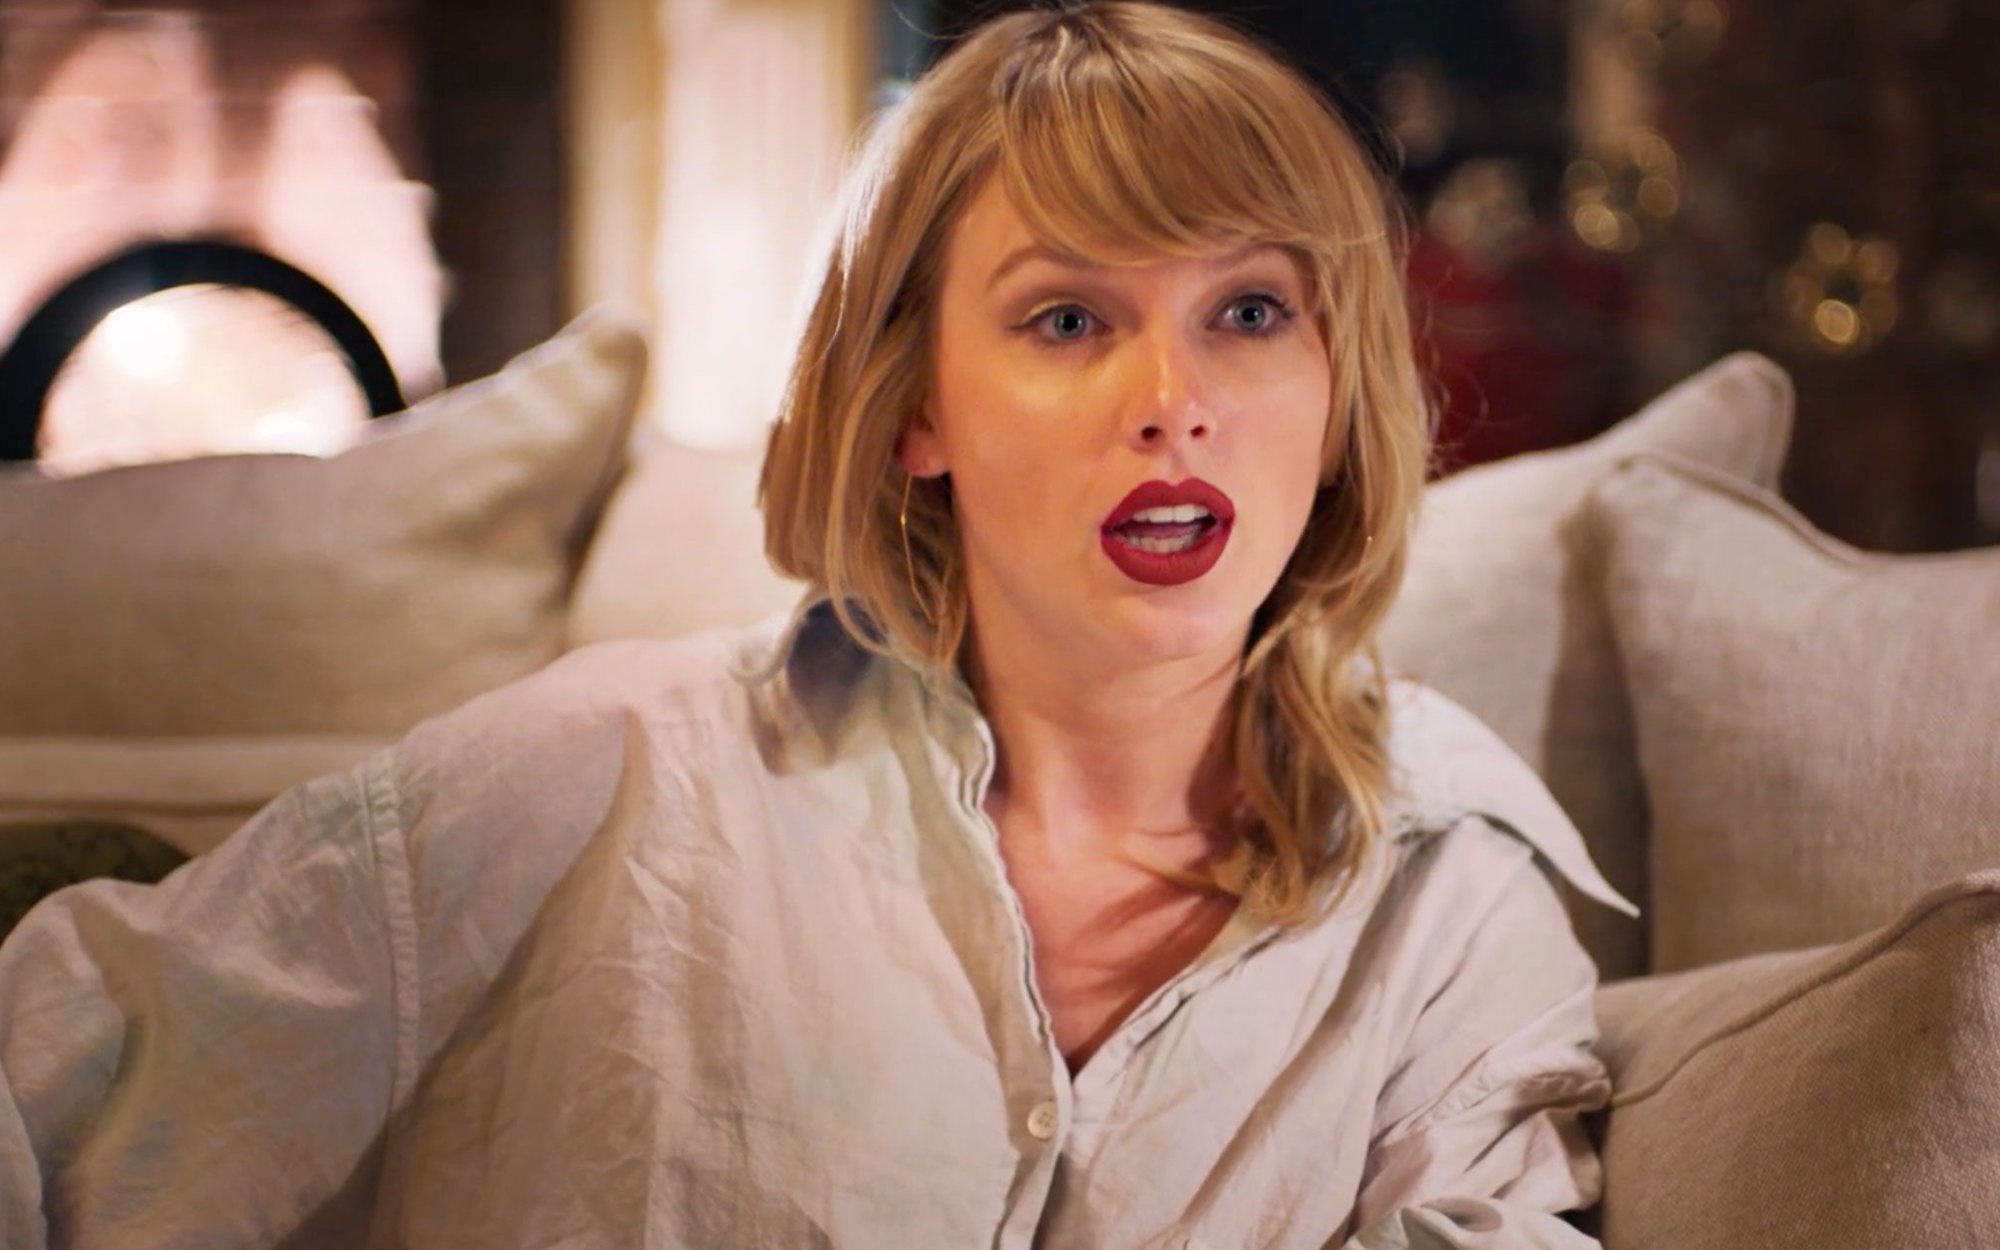 Taylor Swift replica a Netflix tras un chiste machista sobre ella: "¿Y si dejamos de degradar a las mujeres?"